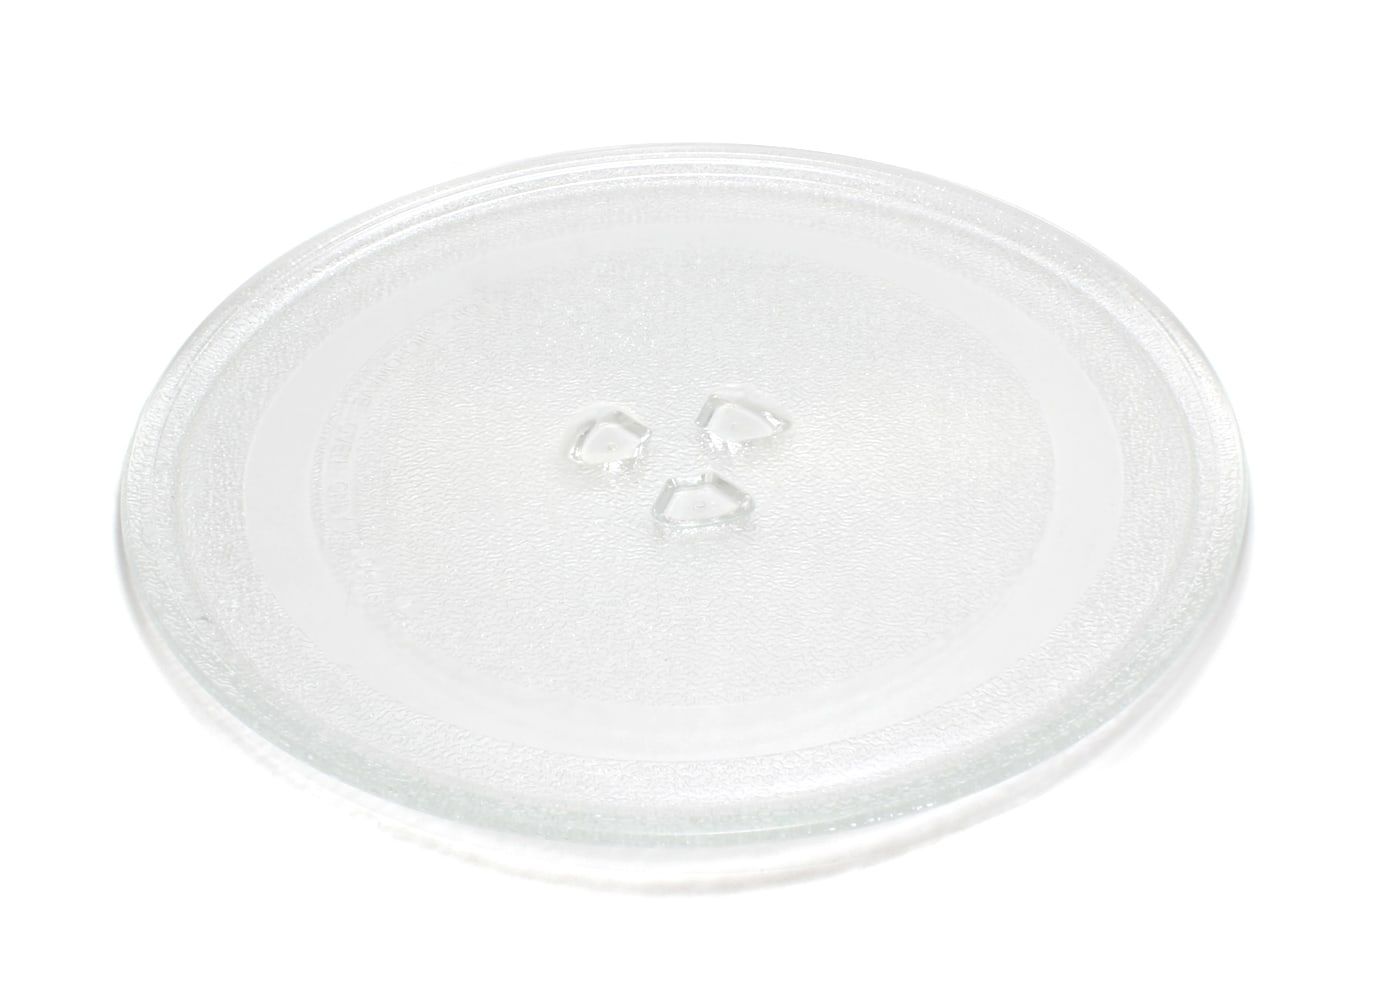 Тарелка для микроволновой печи Helpico 49PM005, MCW011UN тарелка для микроволновой печи eurokitchen n 12